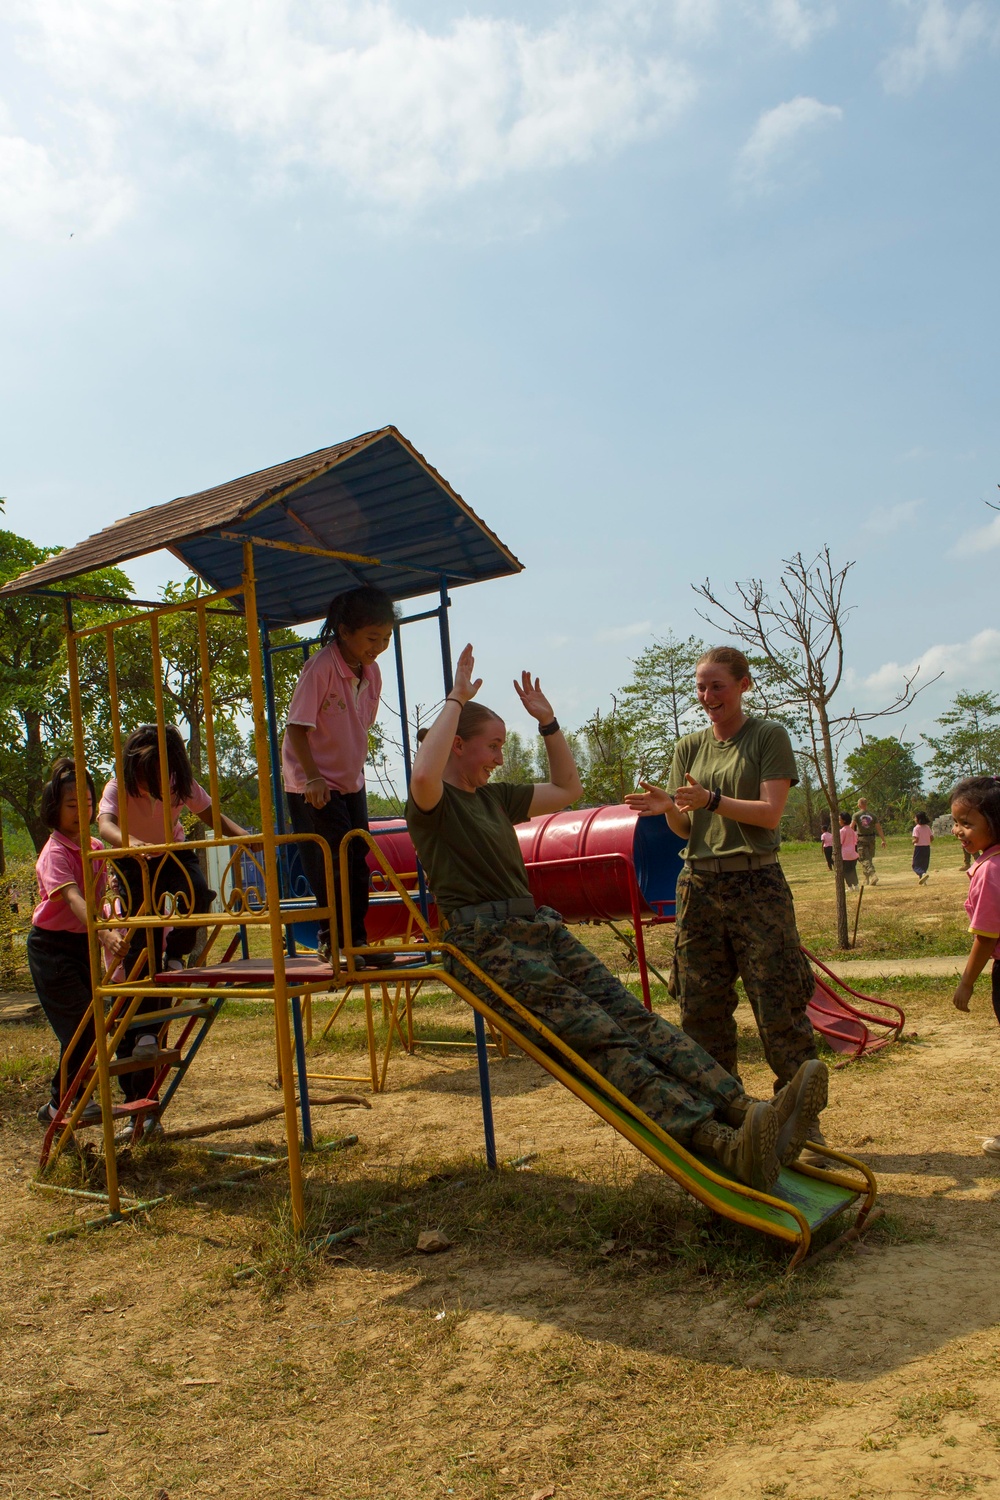 US service members, Thai students break language barriers